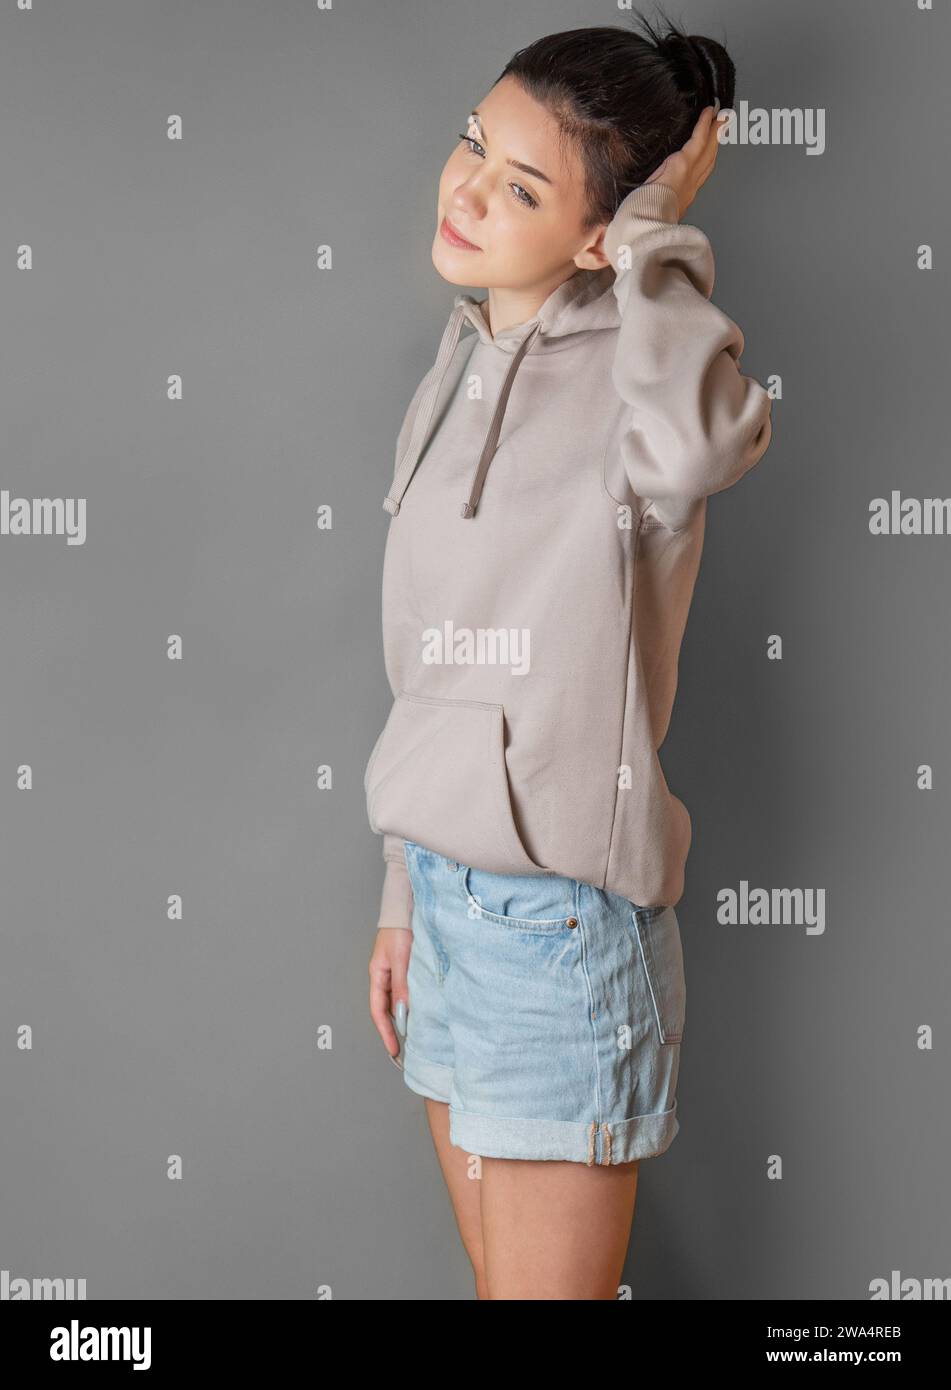 Pensive thoughtful teenager girl wearing sweatshirt with hood Stock Photo